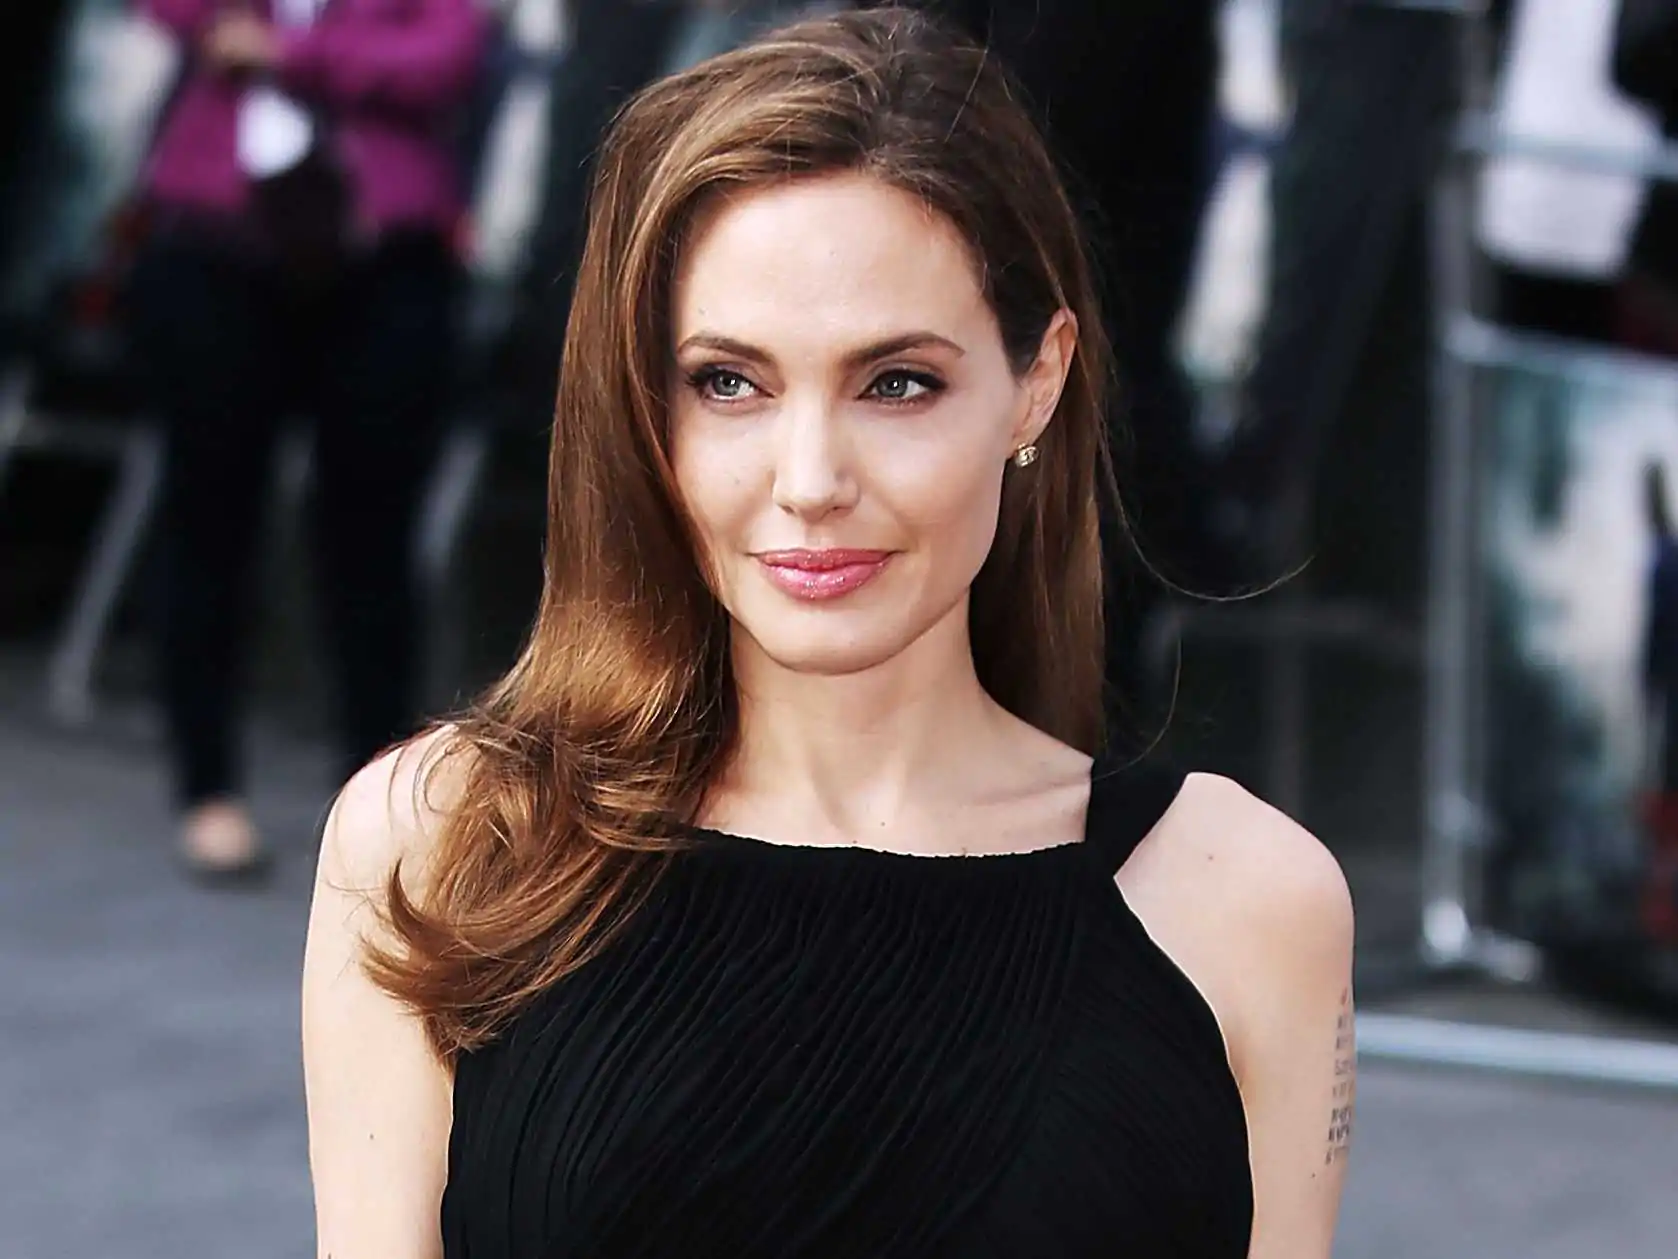 Ecco il nuovo amore di Angelina Jolie